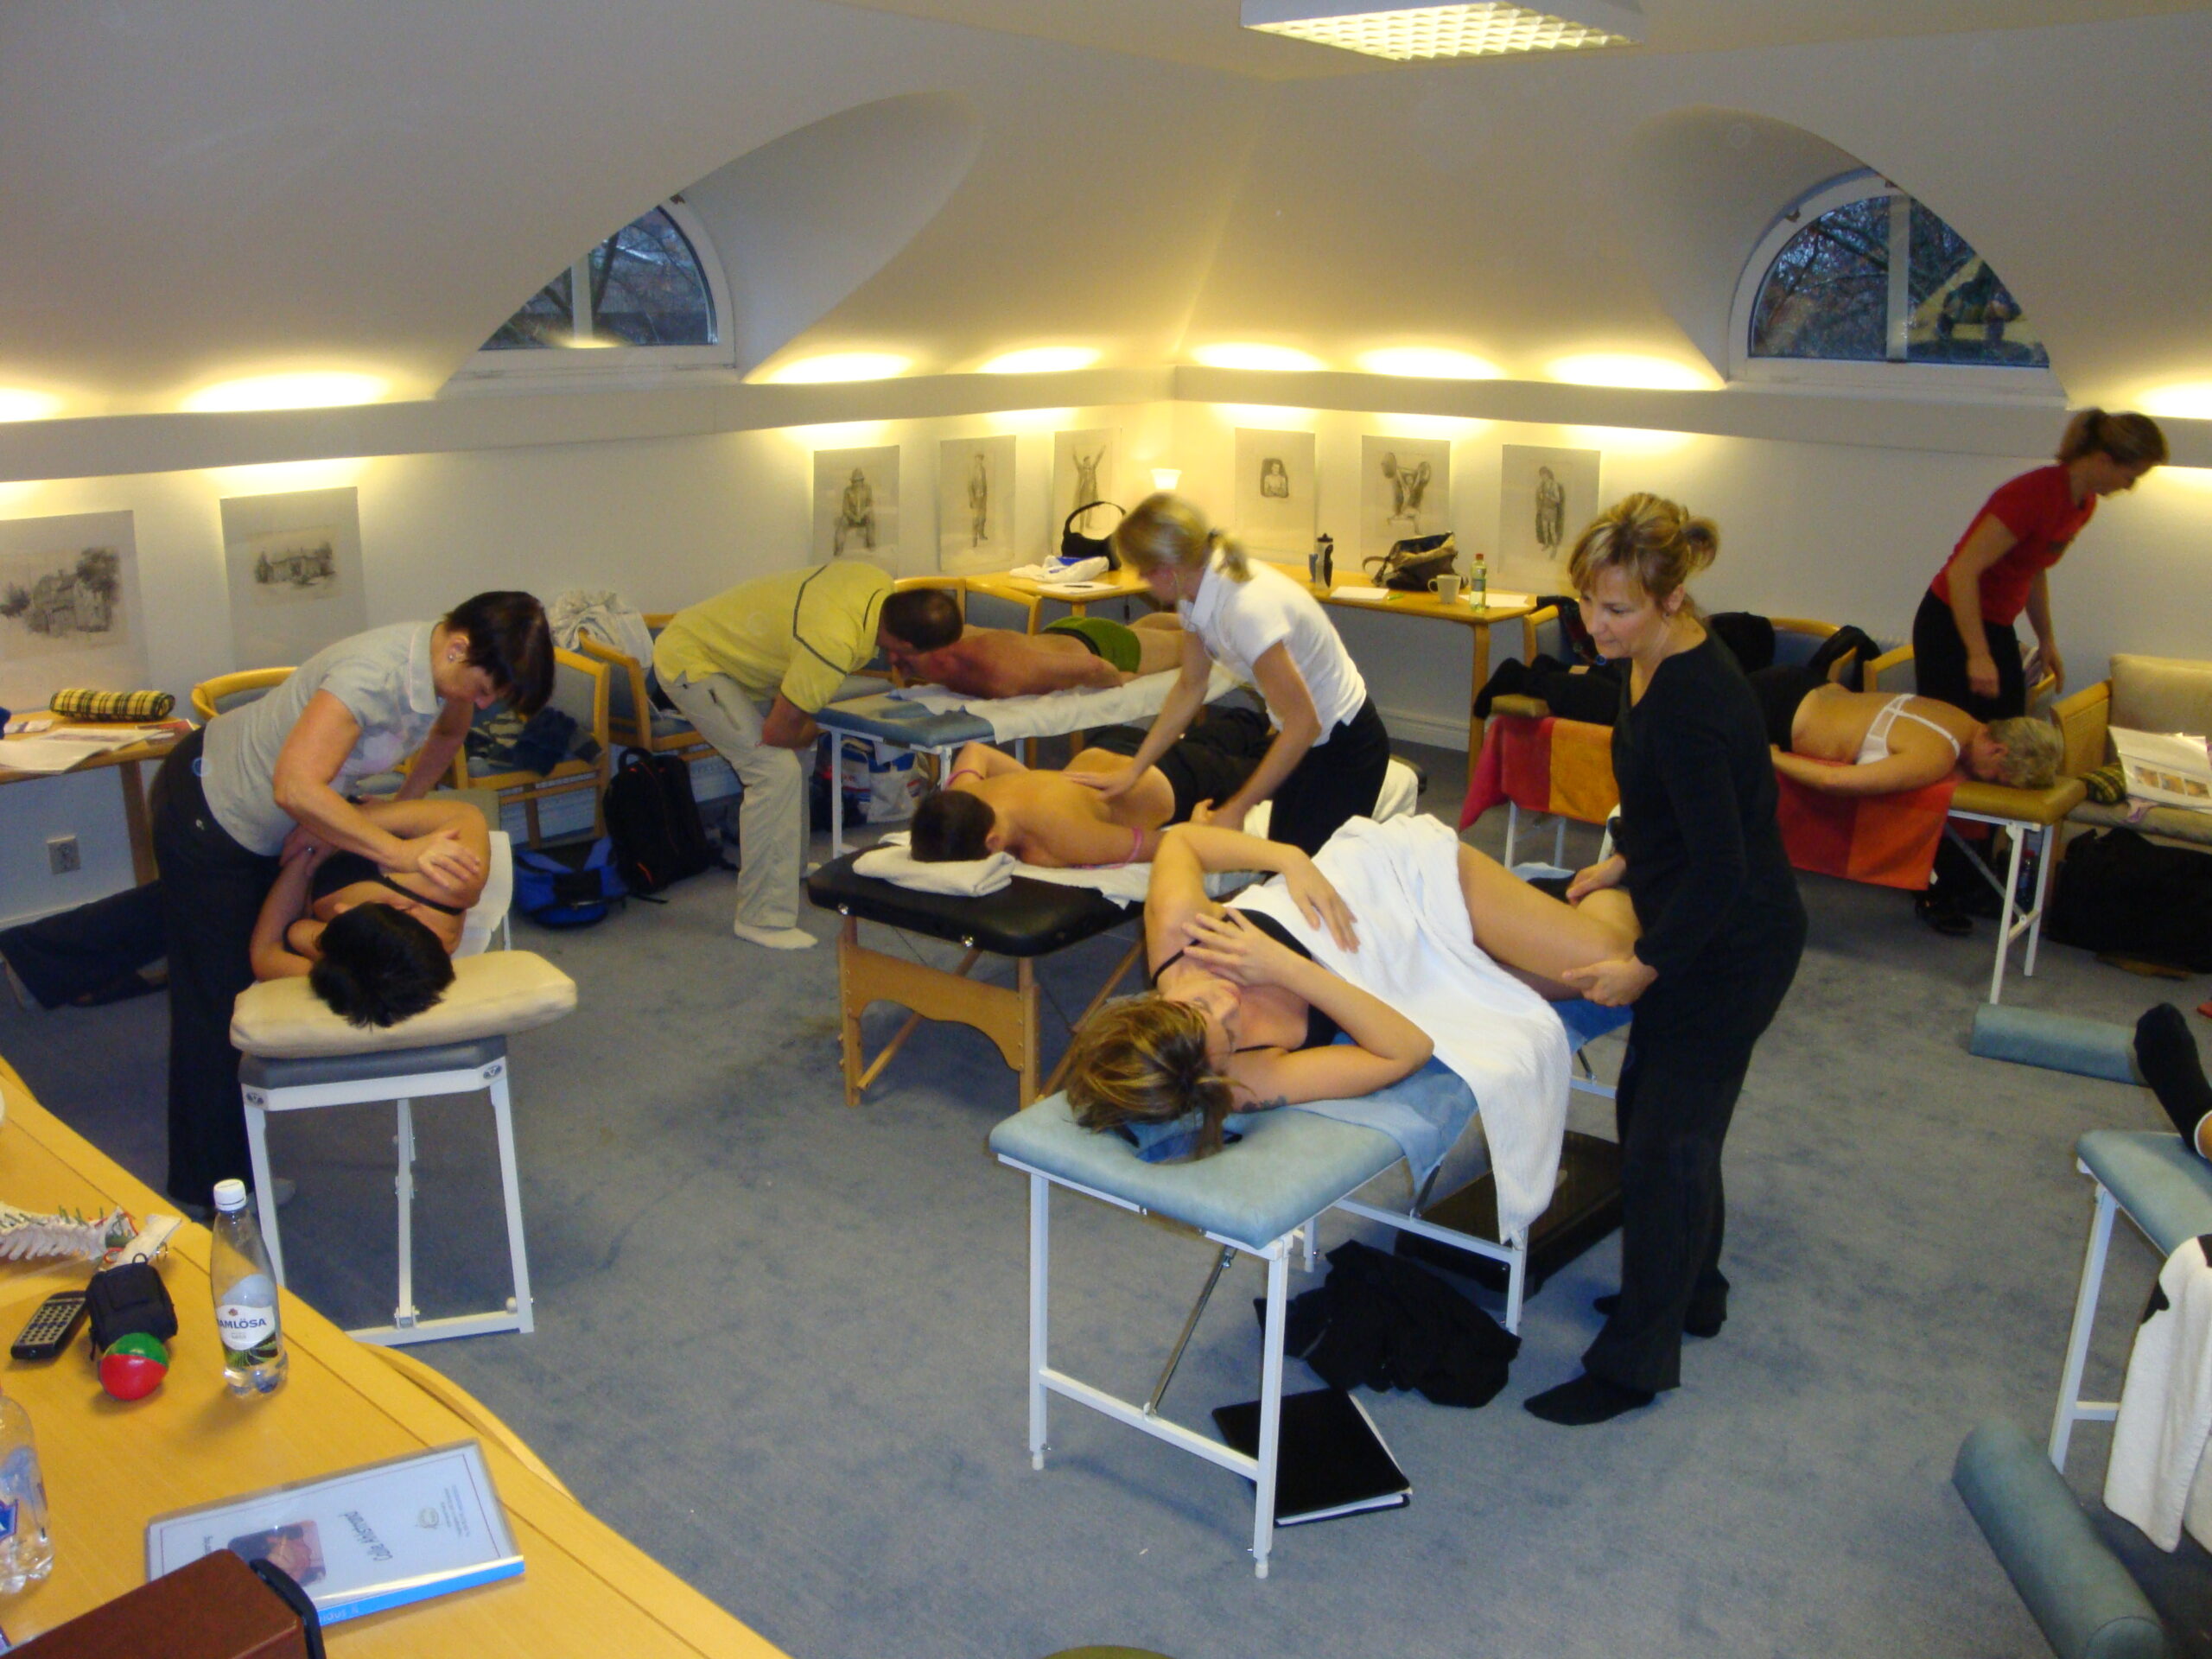 Personer praktiserar massagetekniker parvis